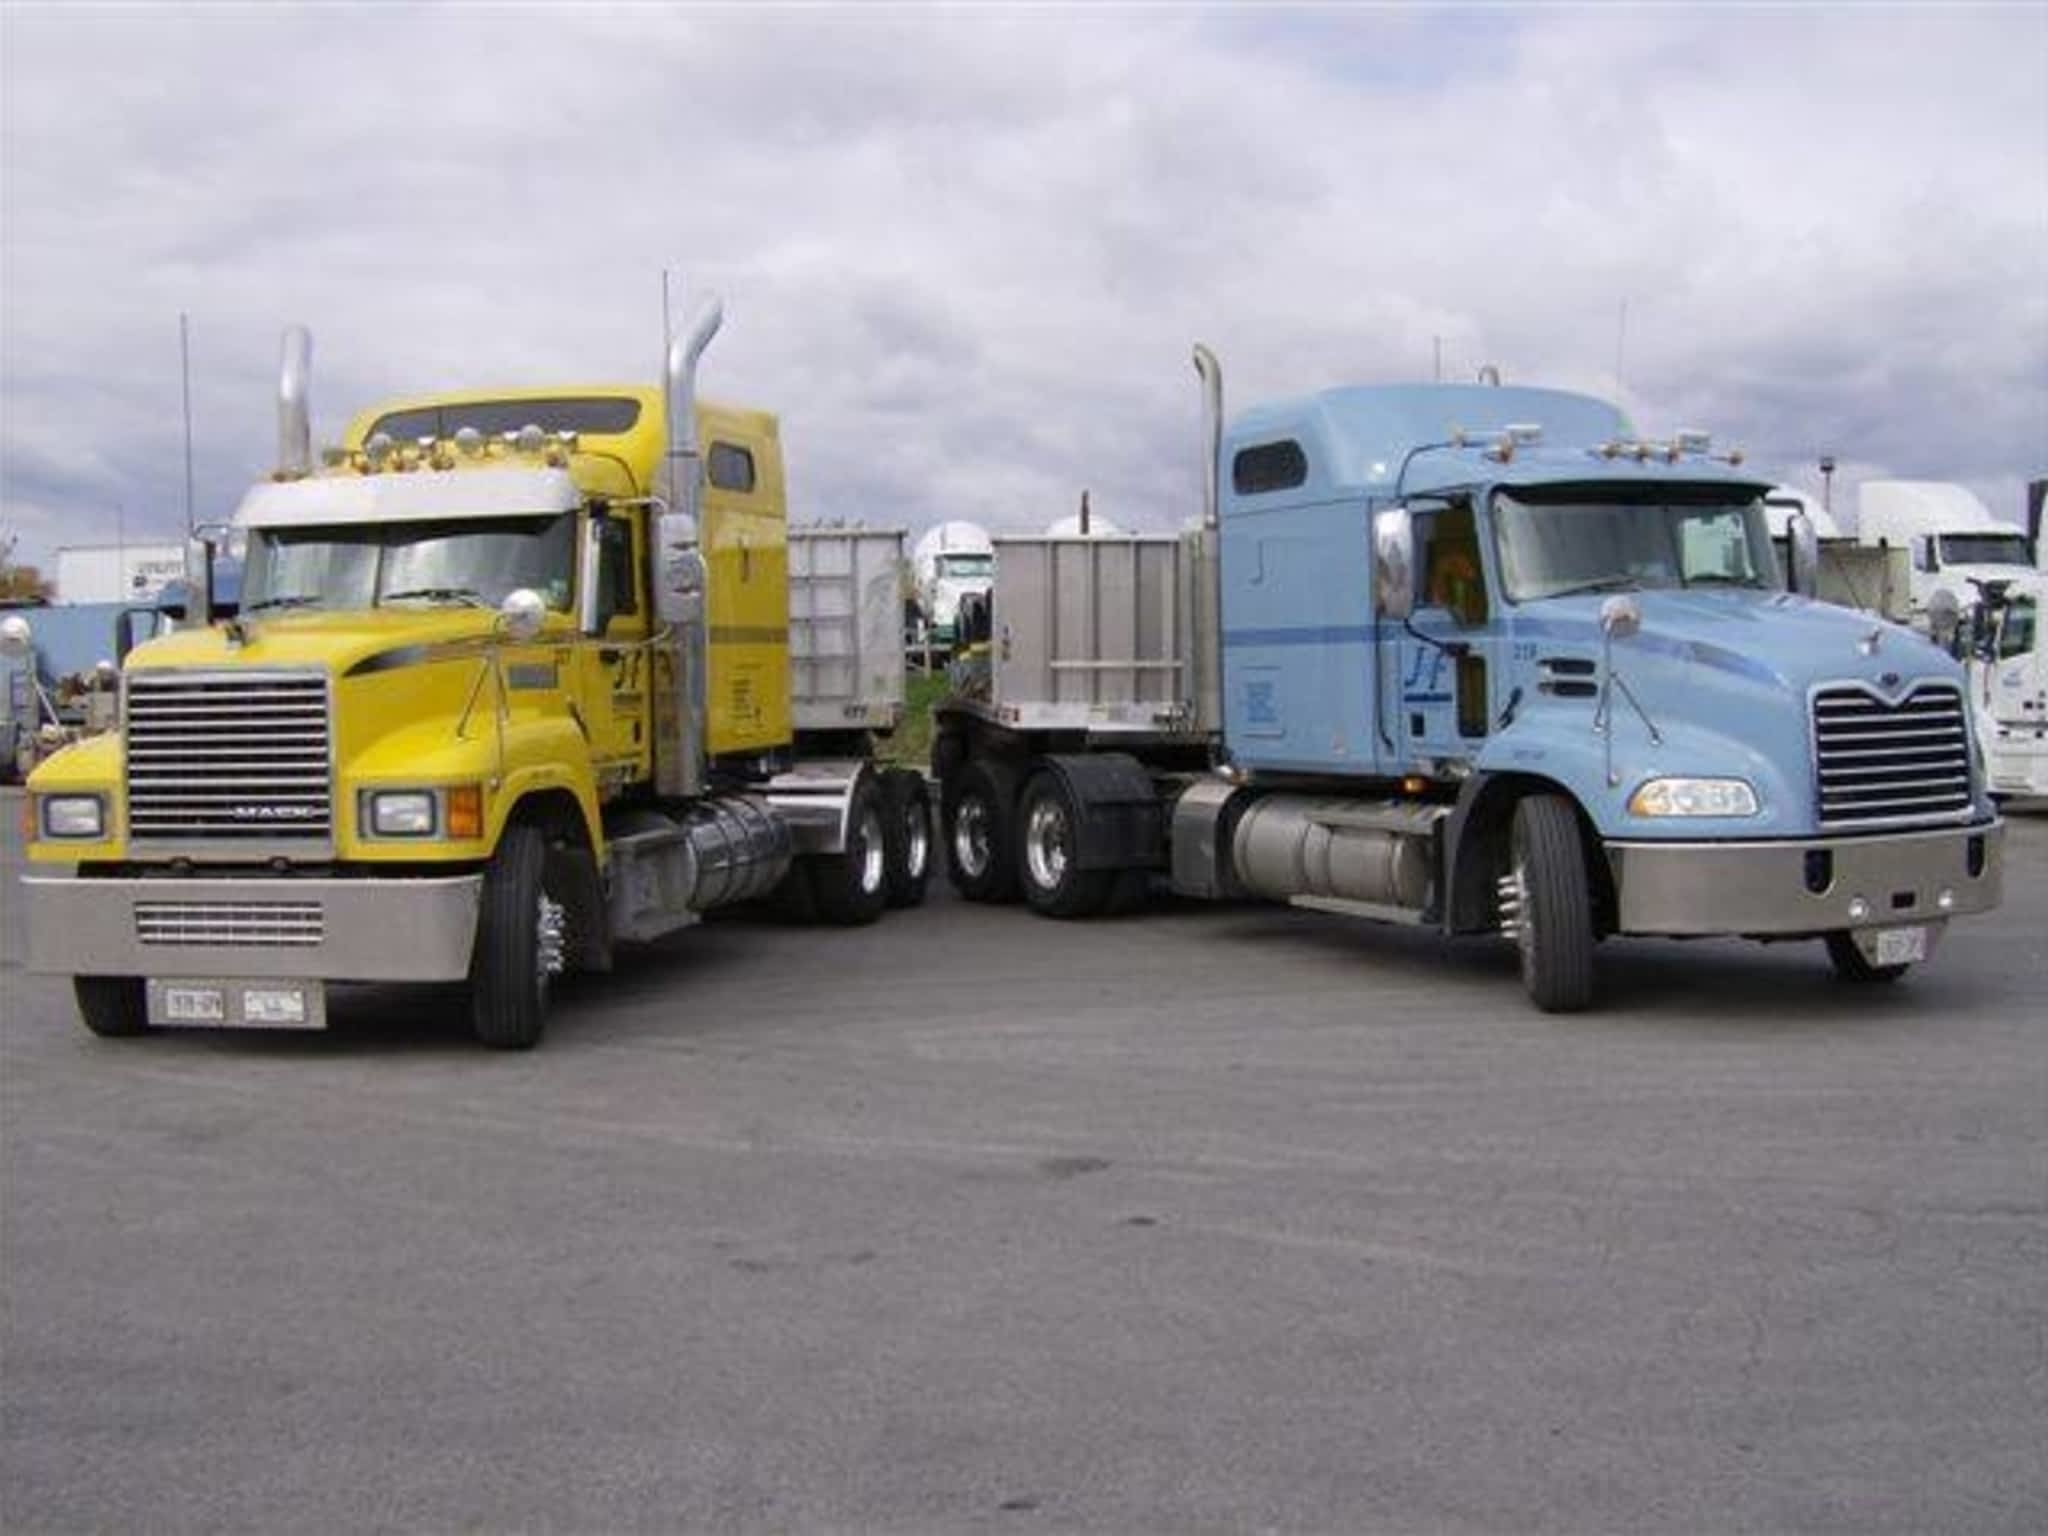 photo J & F Trucking Corp.